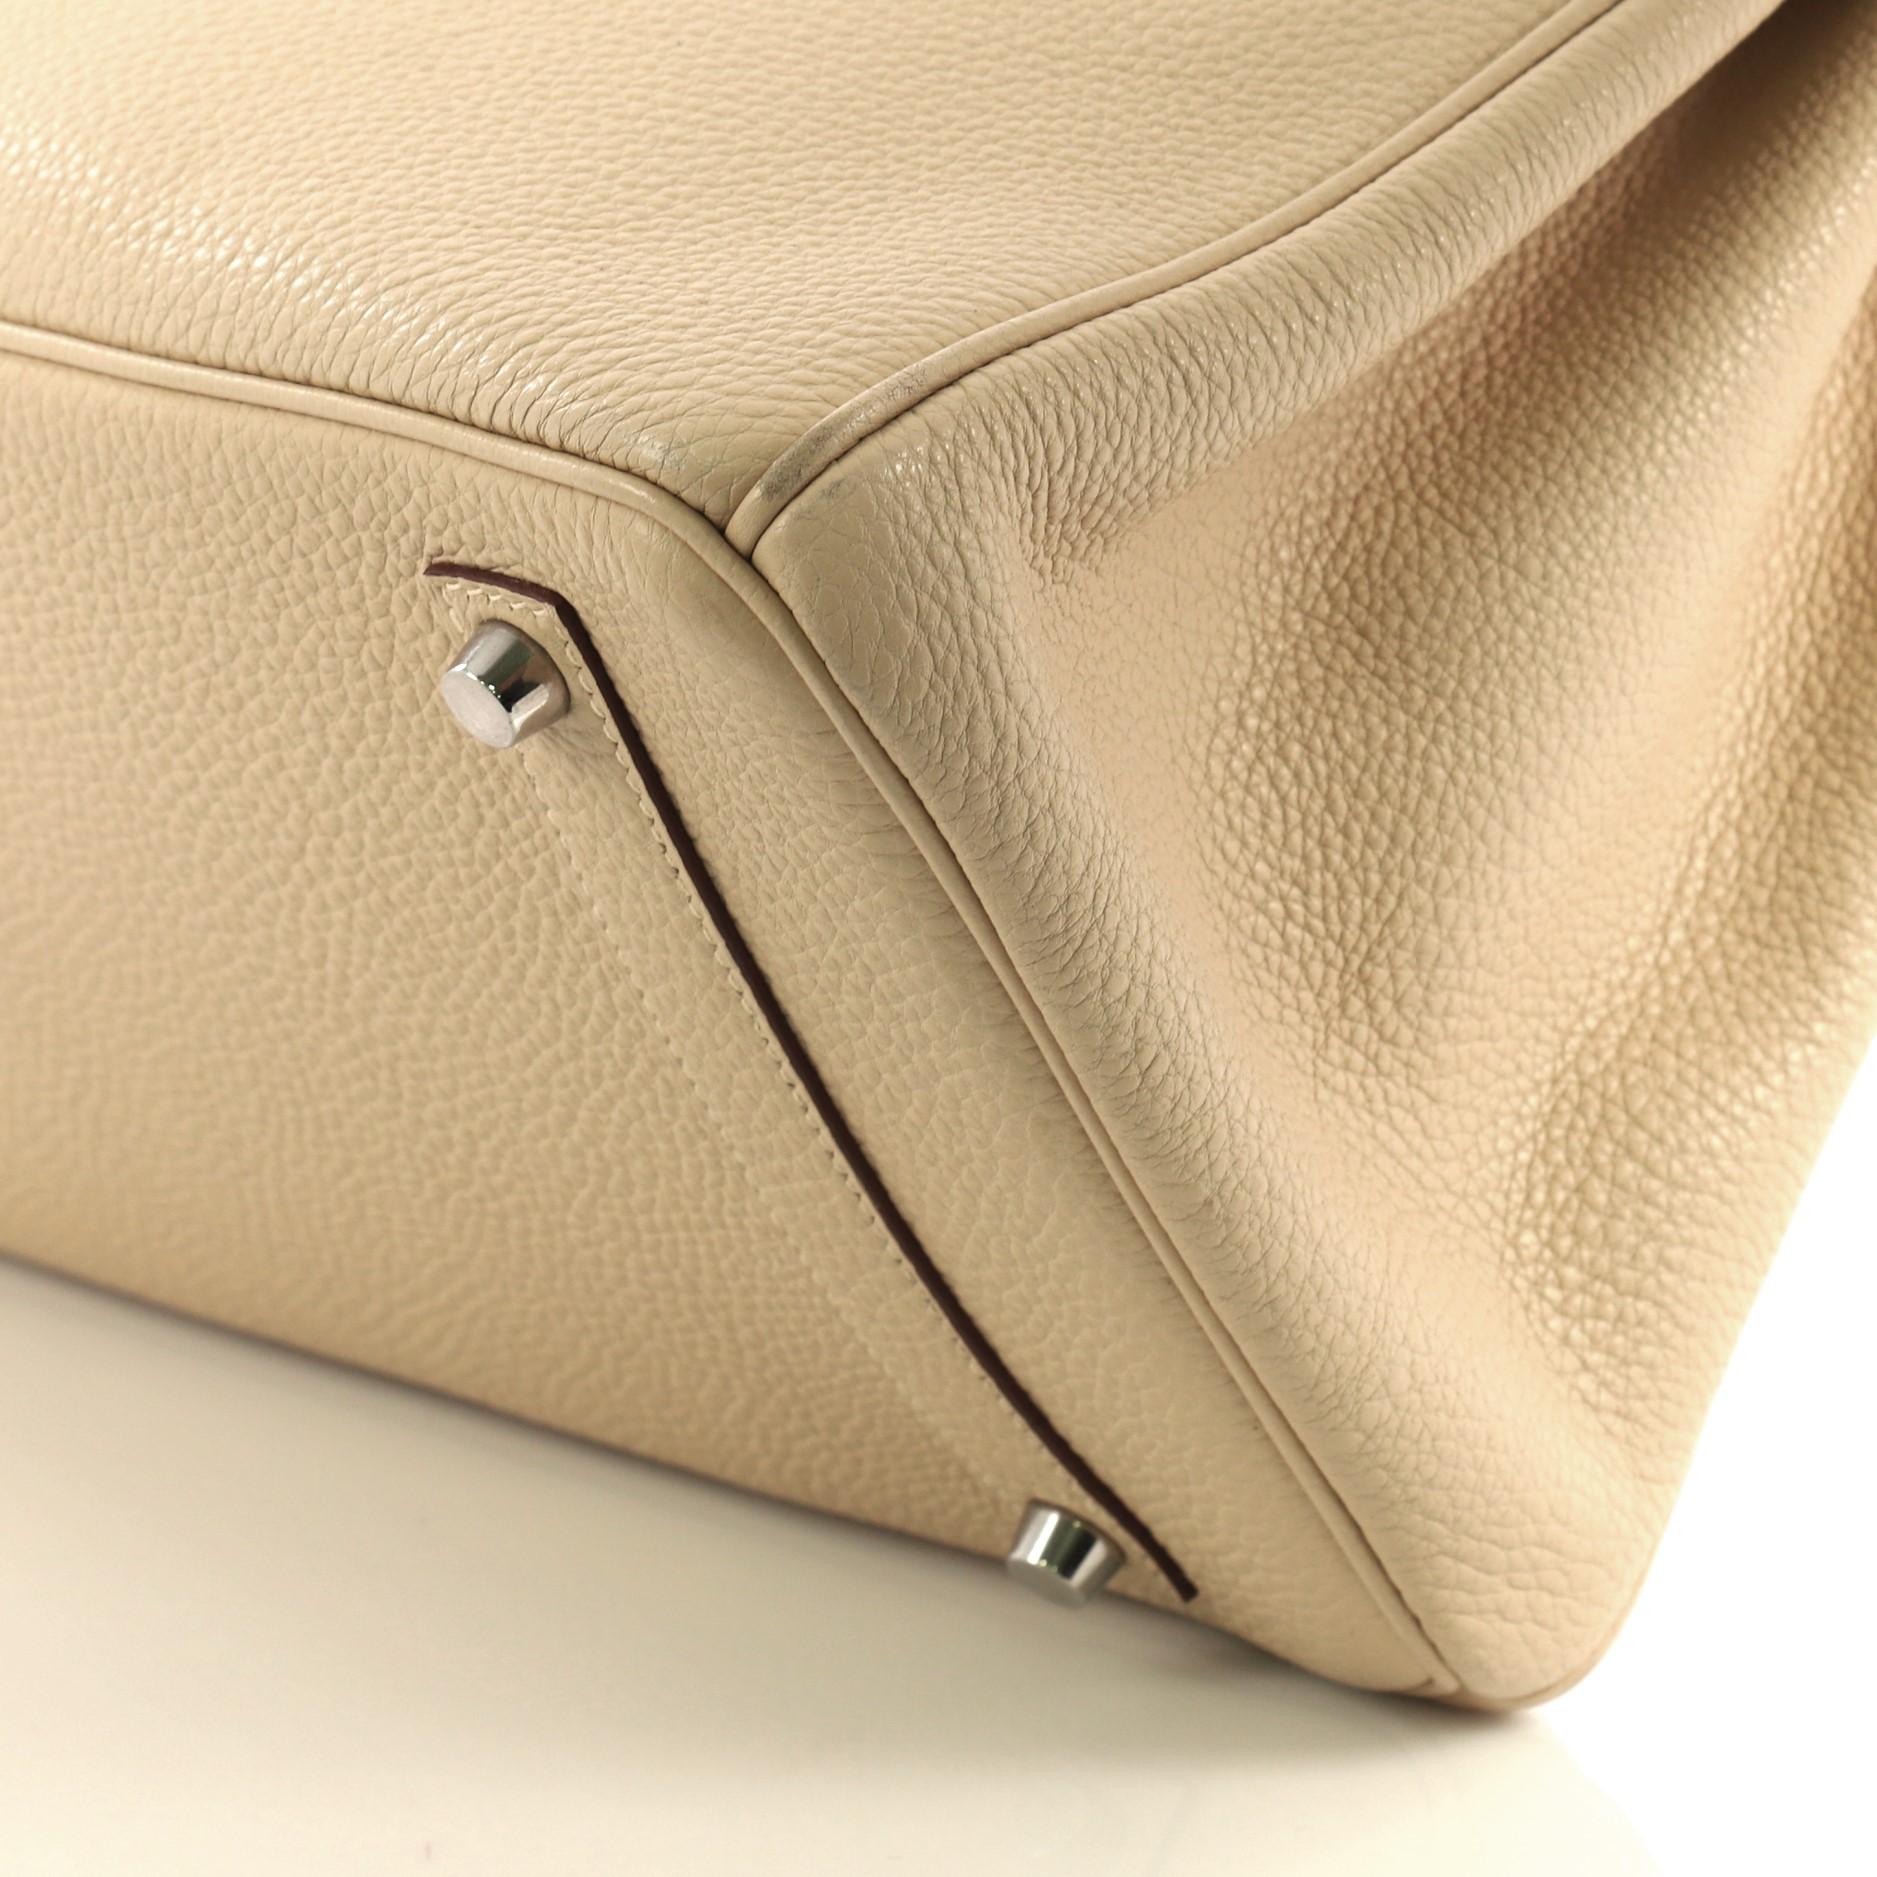 Hermes Birkin Handbag Parchemin Togo with Palladium Hardware 35 3